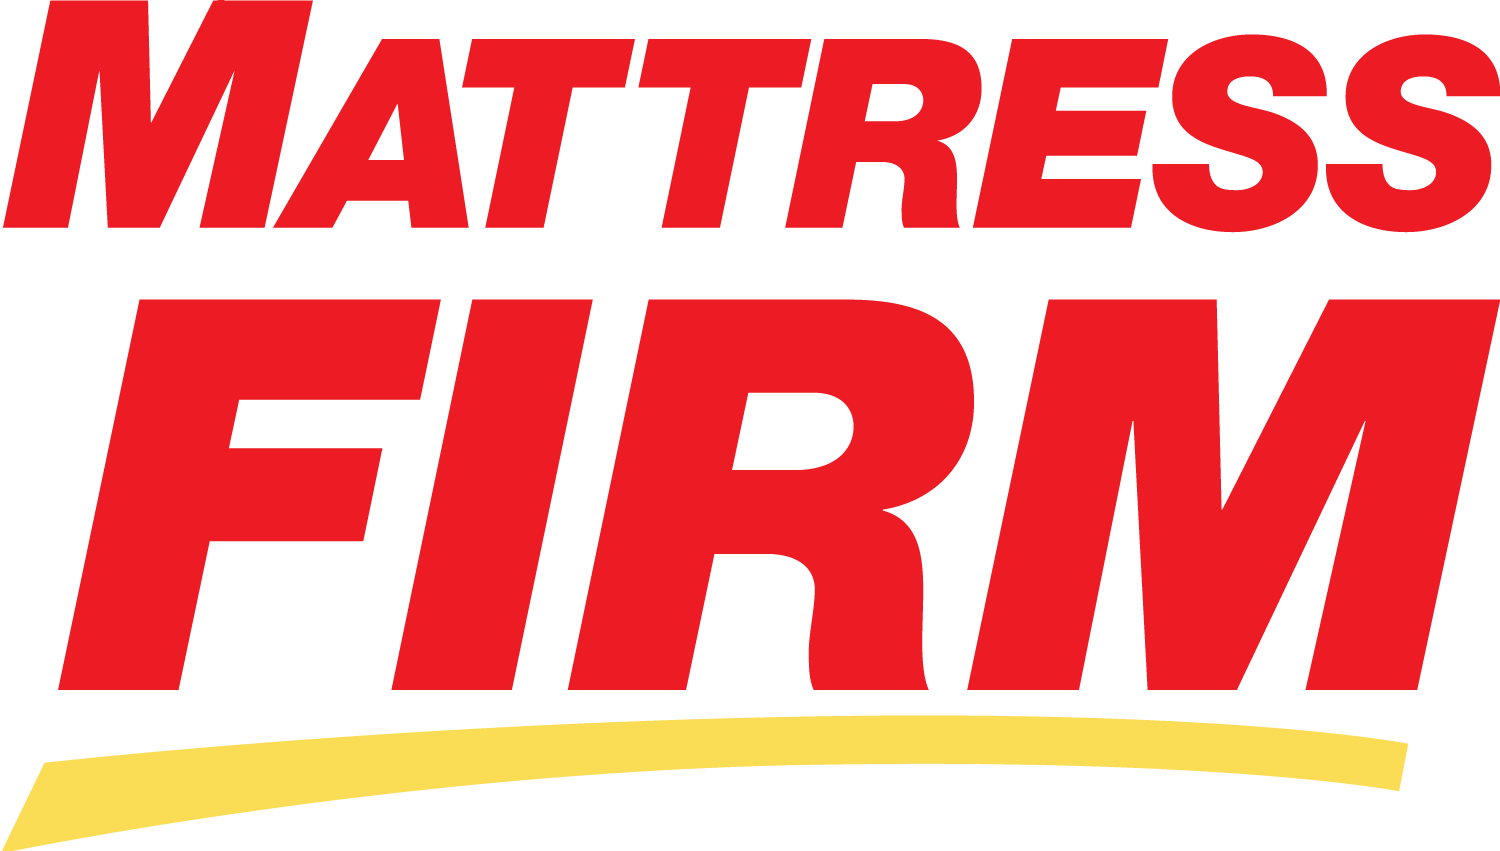 mattress firm logo images